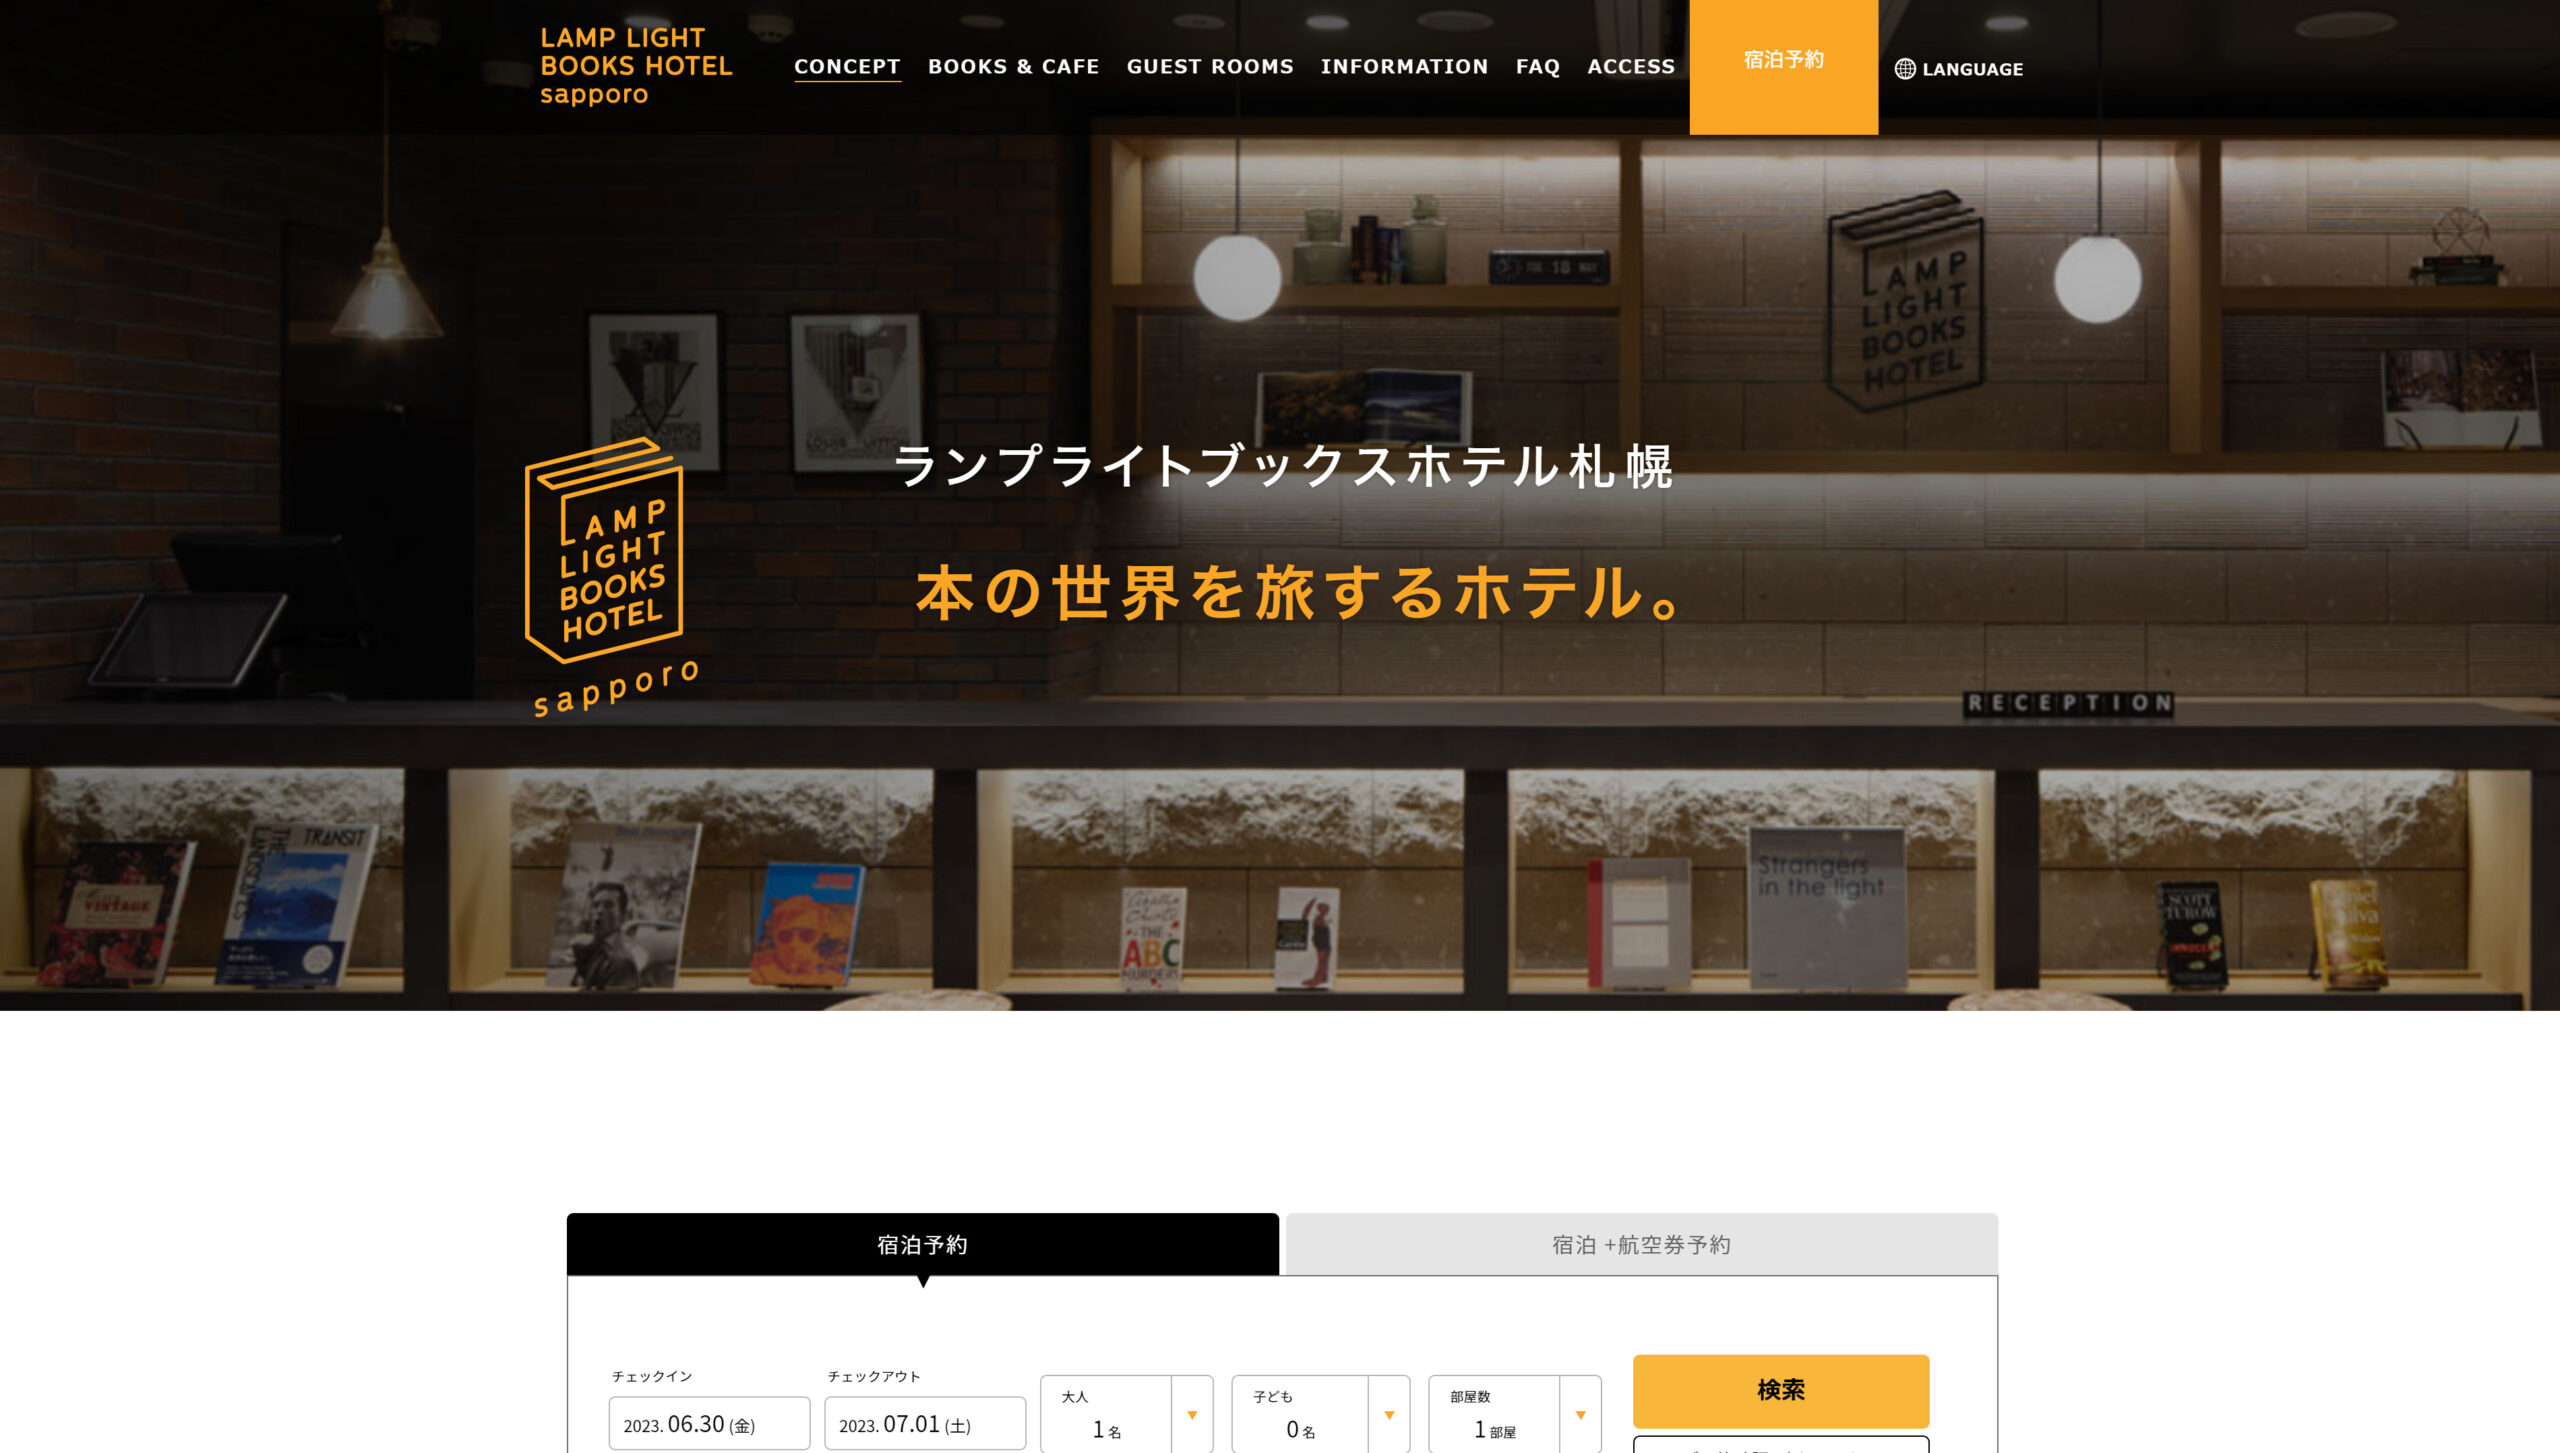 ランプライトブックスホテル札幌